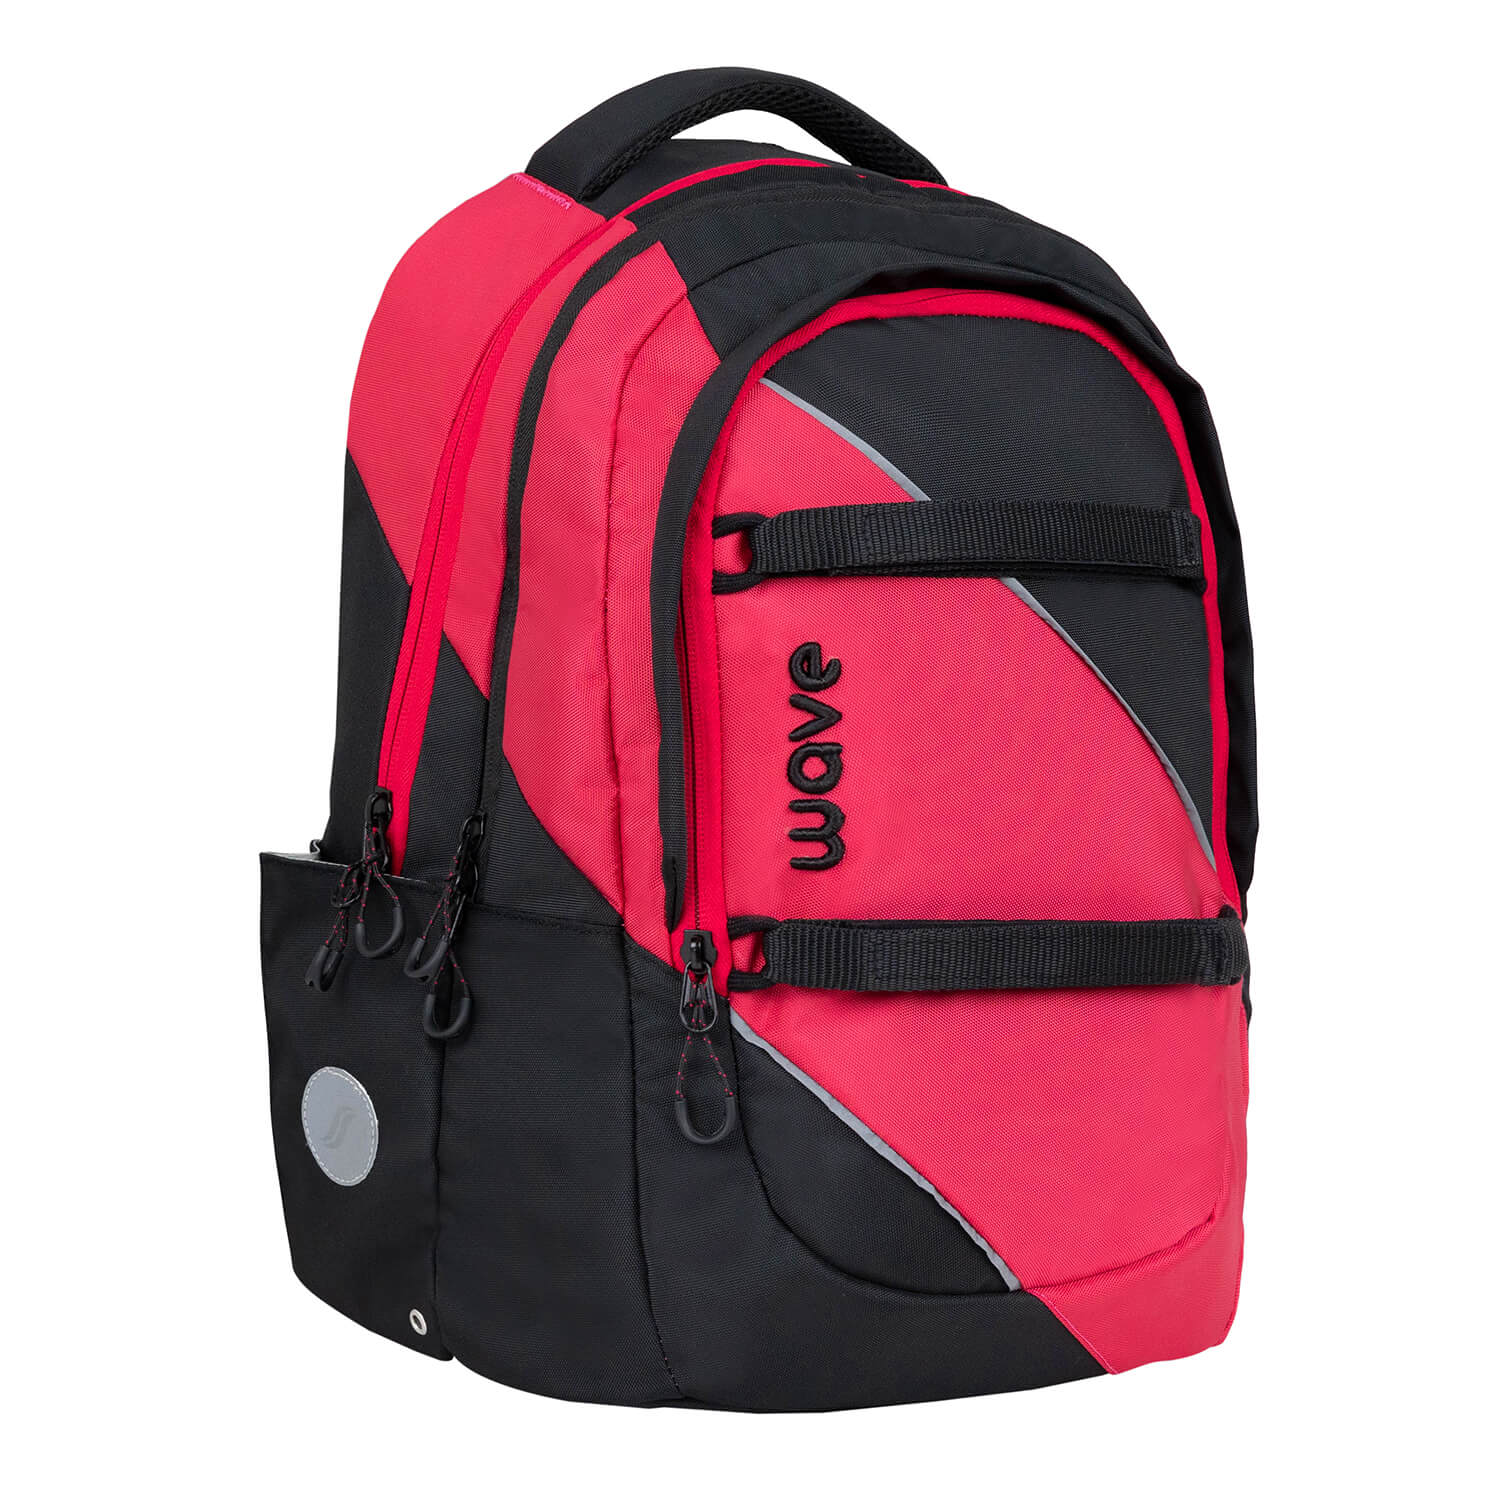 Wave Prime Meteor school backpack